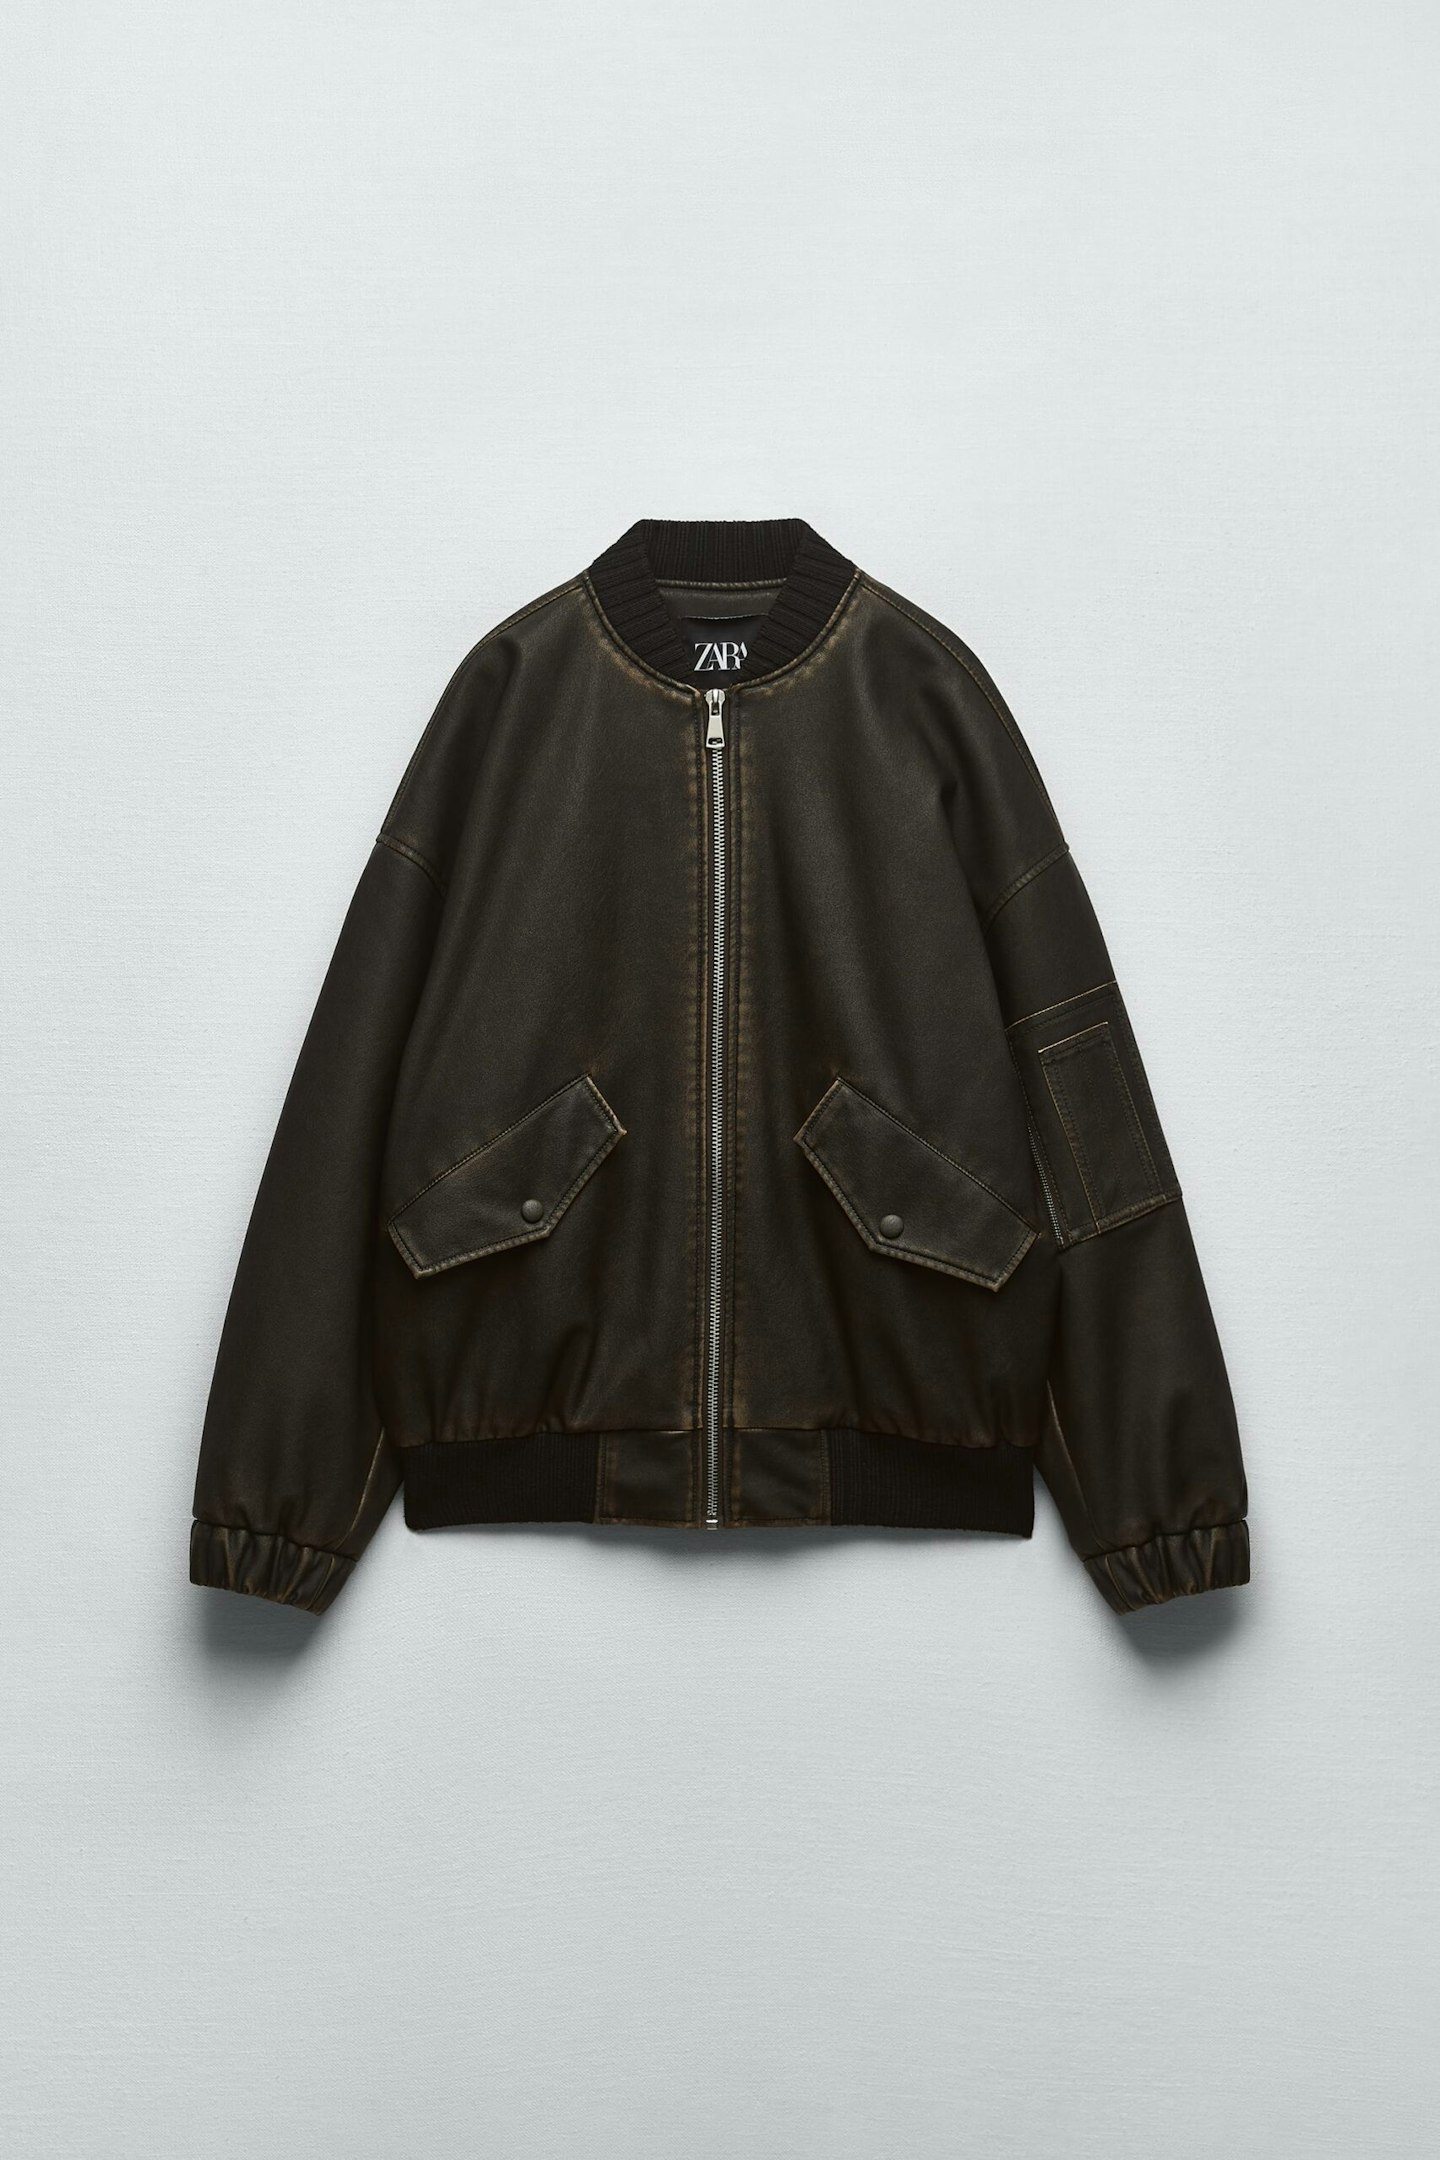 Zara, Leather-Effect Bomber Jacket